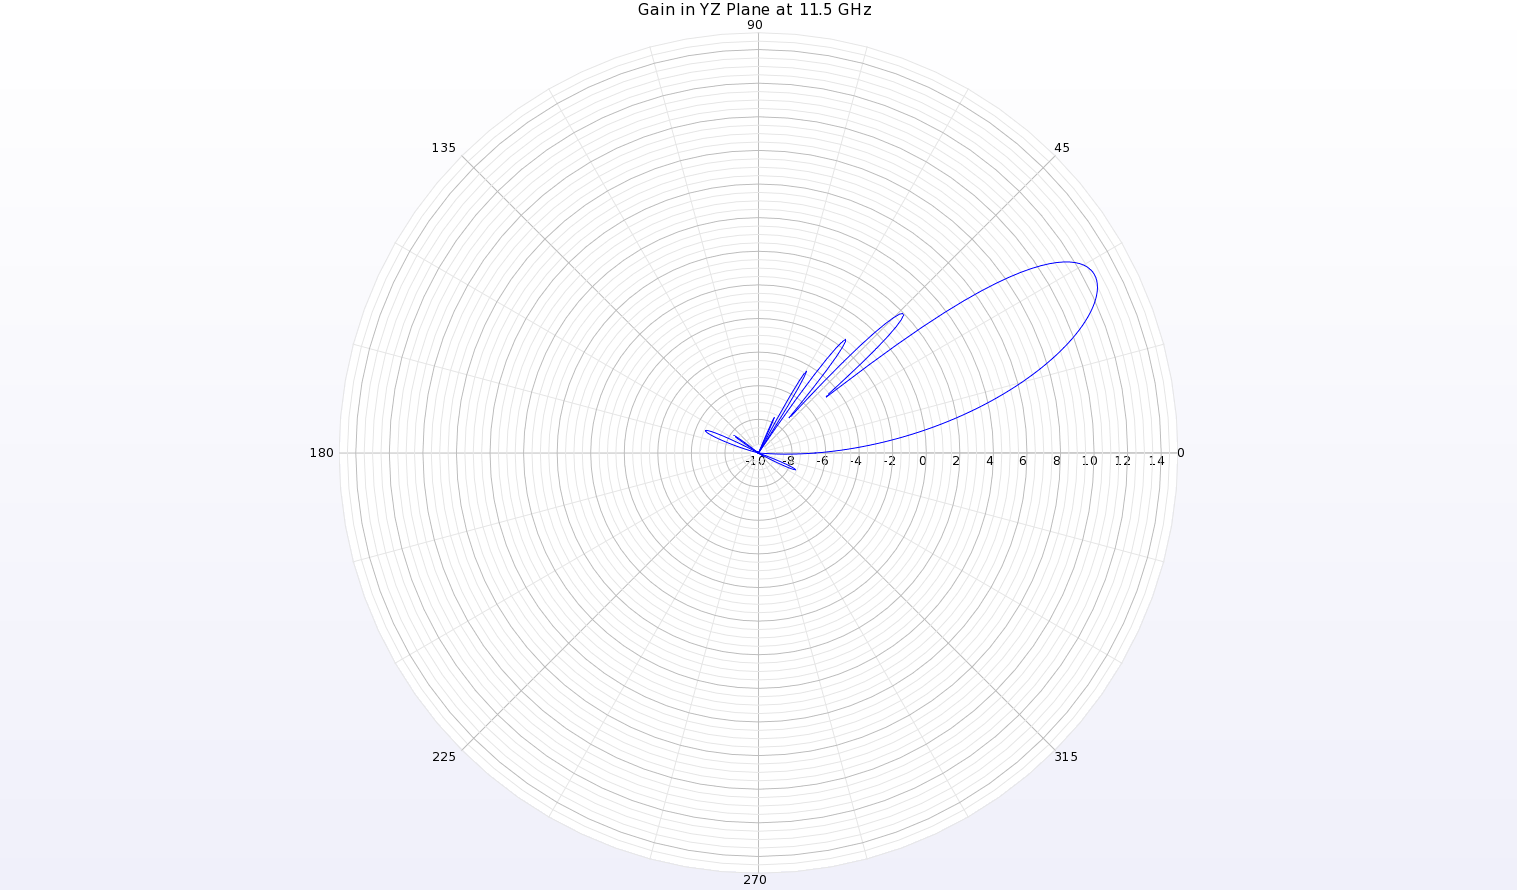 Figura 13: Un diagrama polar del diagrama de ganancia a 11,5 GHz en el plano YZ de la antena muestra un haz en theta=28 grados con una ganancia de pico de 12,7 dBi.